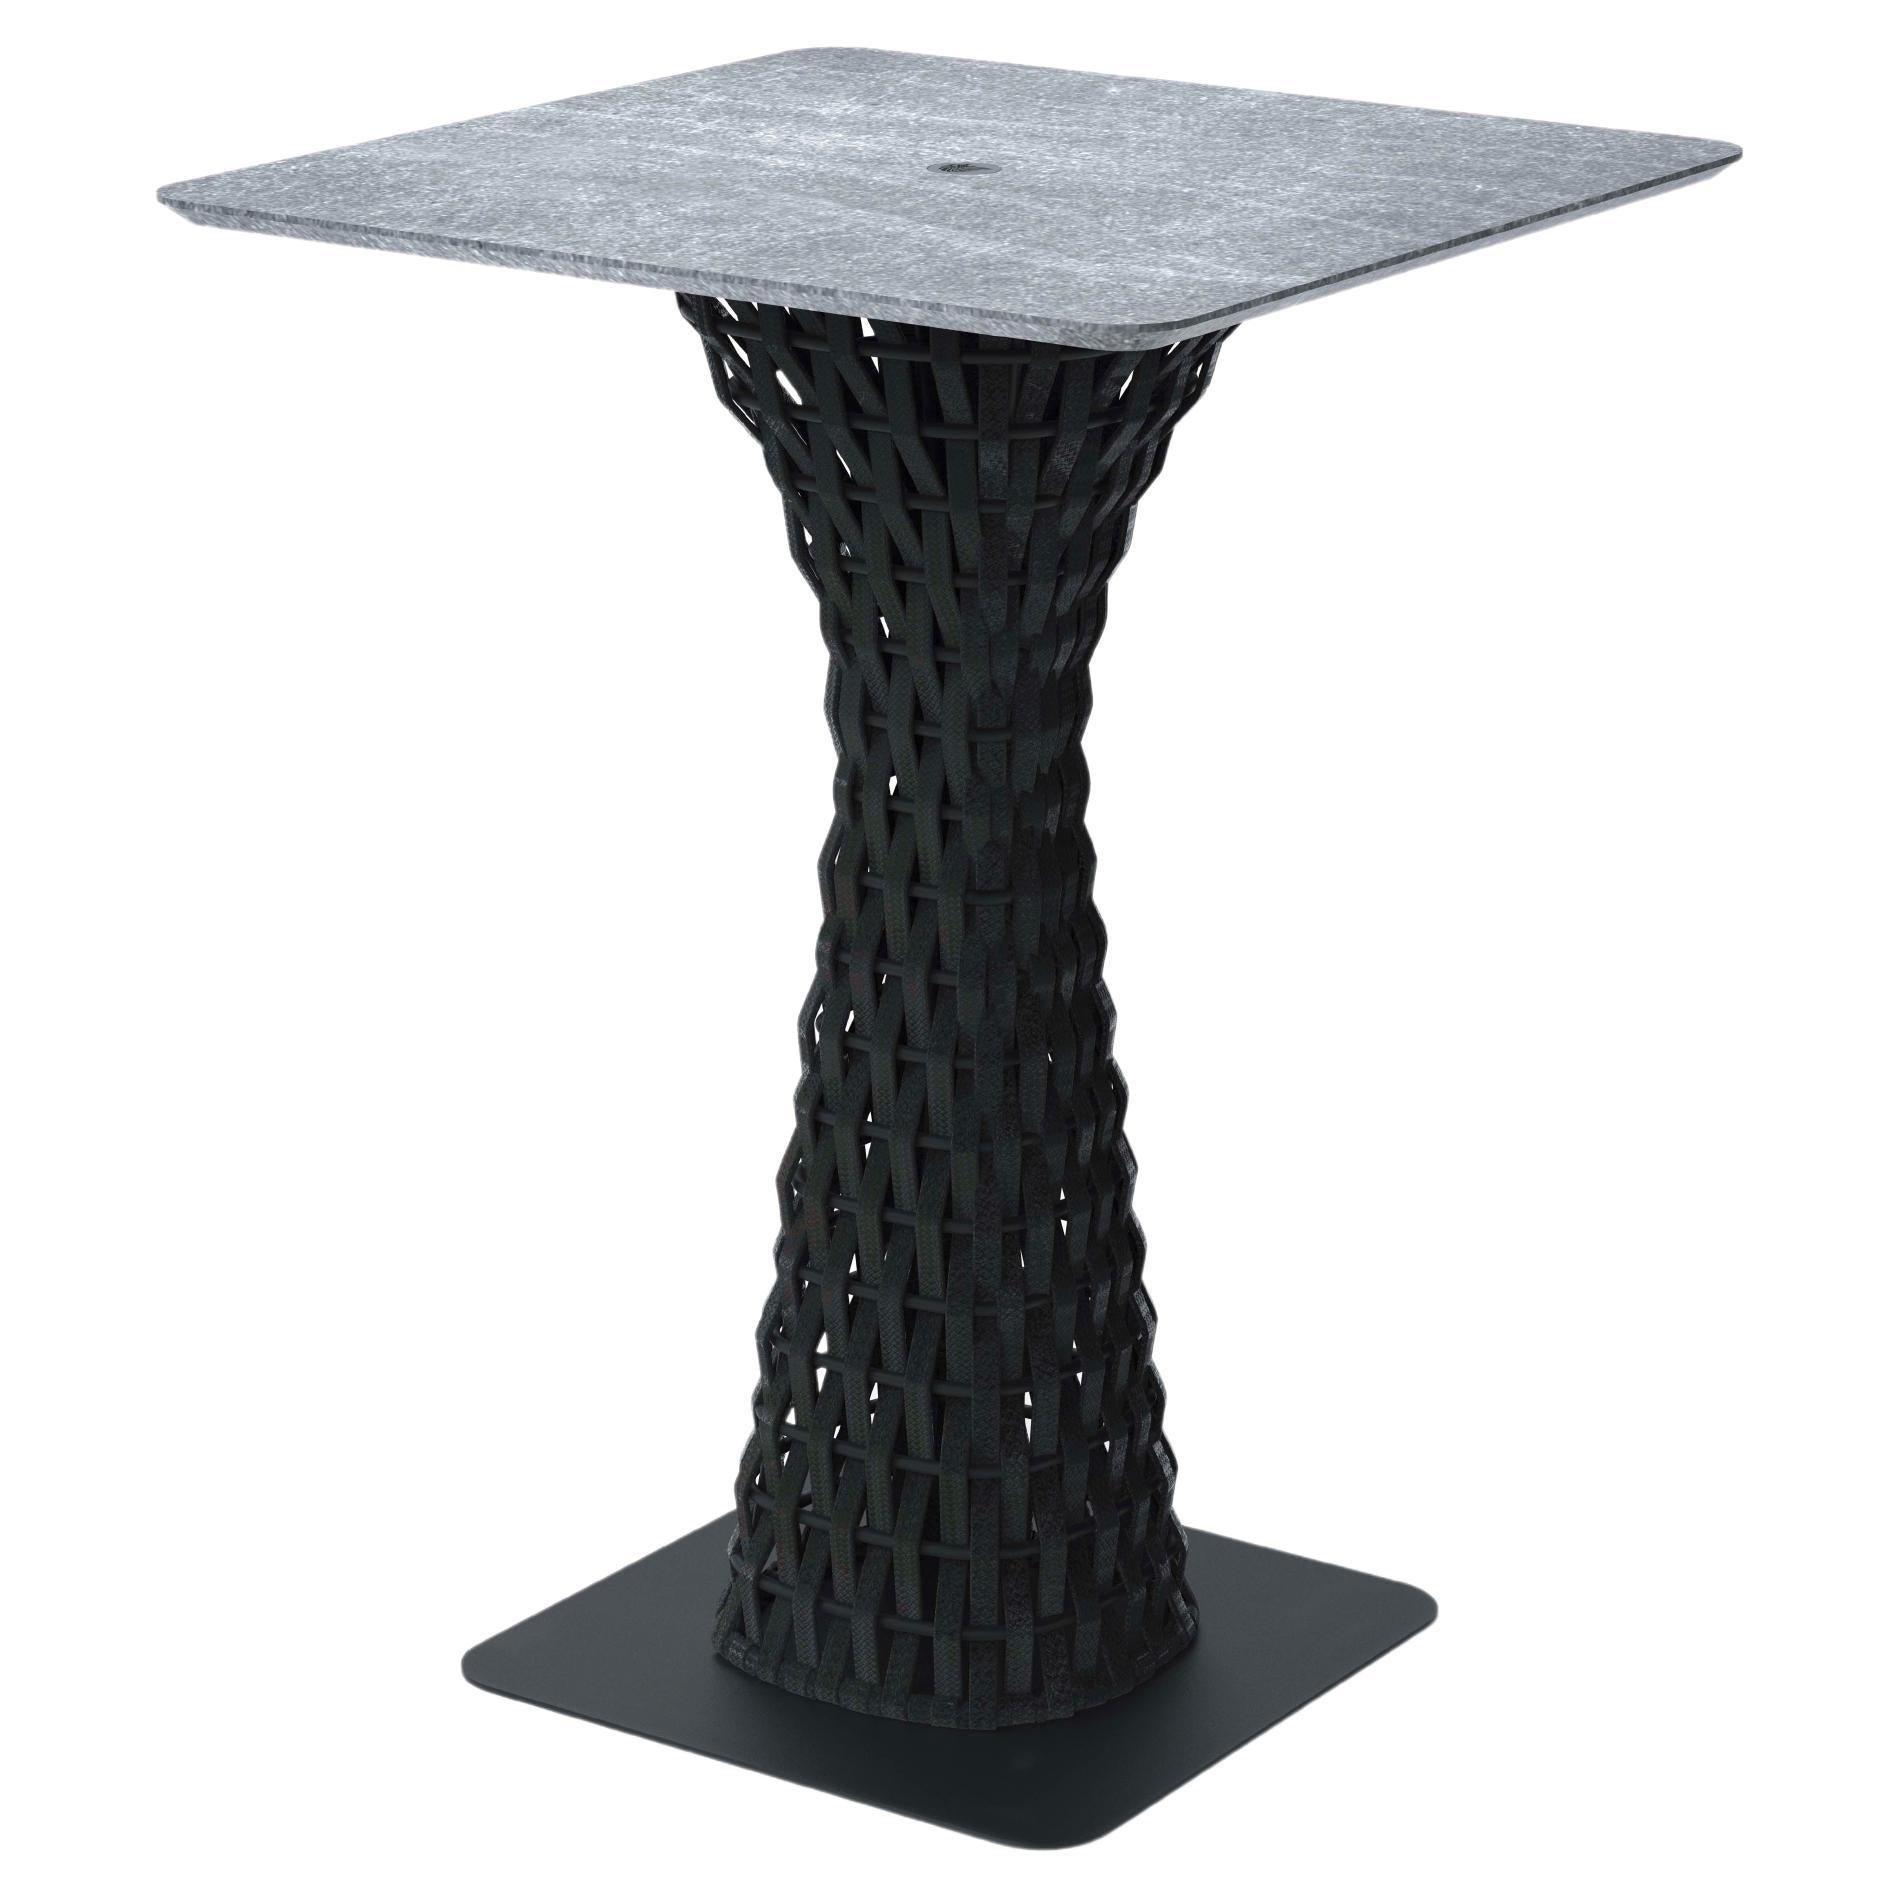 Giorgio Collection Outdoor Garden Bar Table with Stone Top For Sale